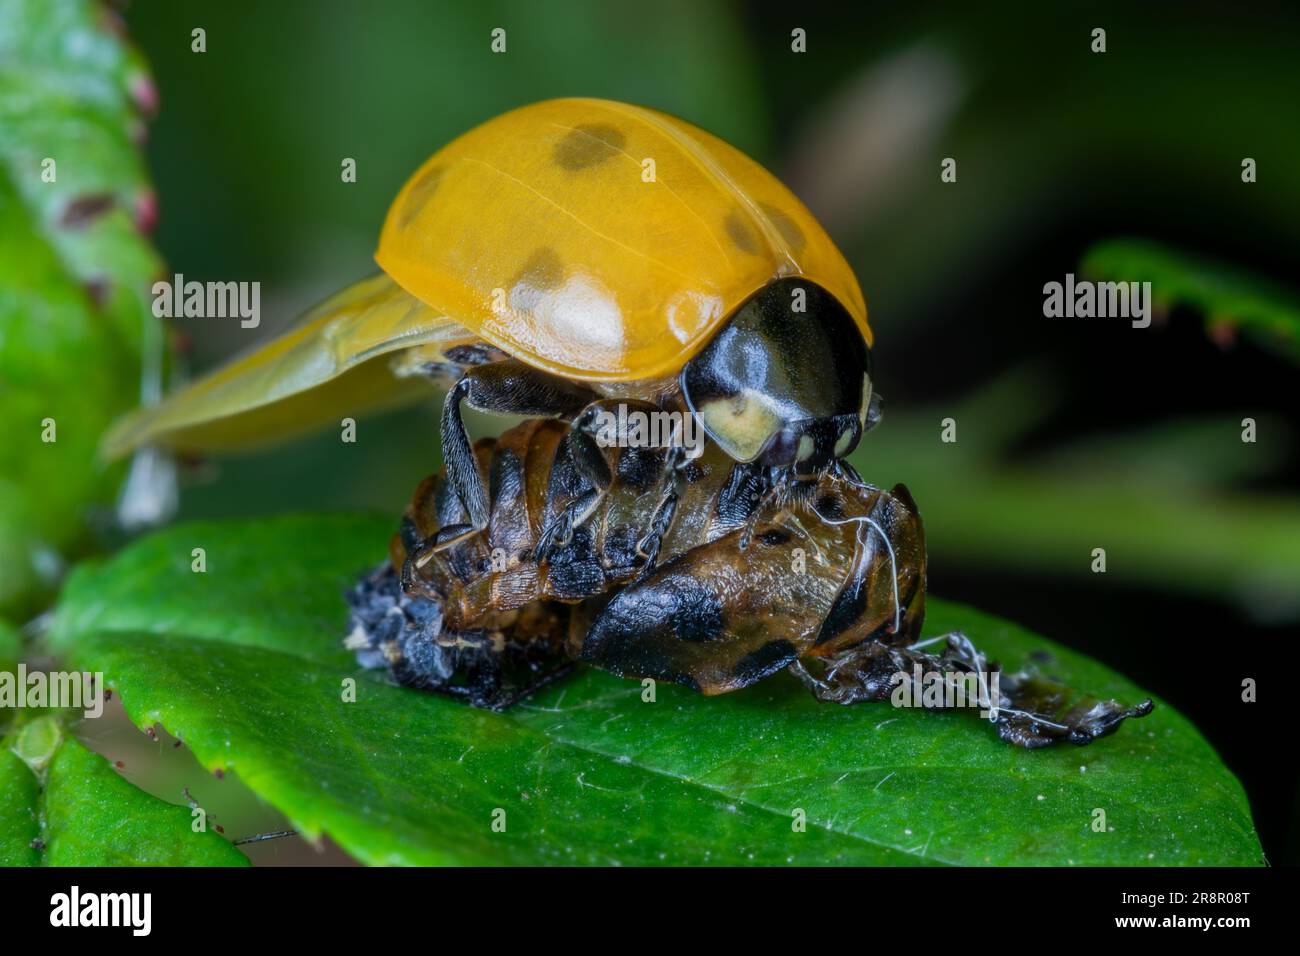 Une coccinella septempunctata (7 Spot Ladybird) fraîchement apparue assise sur le dessus de son exuvia, avant que sa coquille ne durcisse Banque D'Images